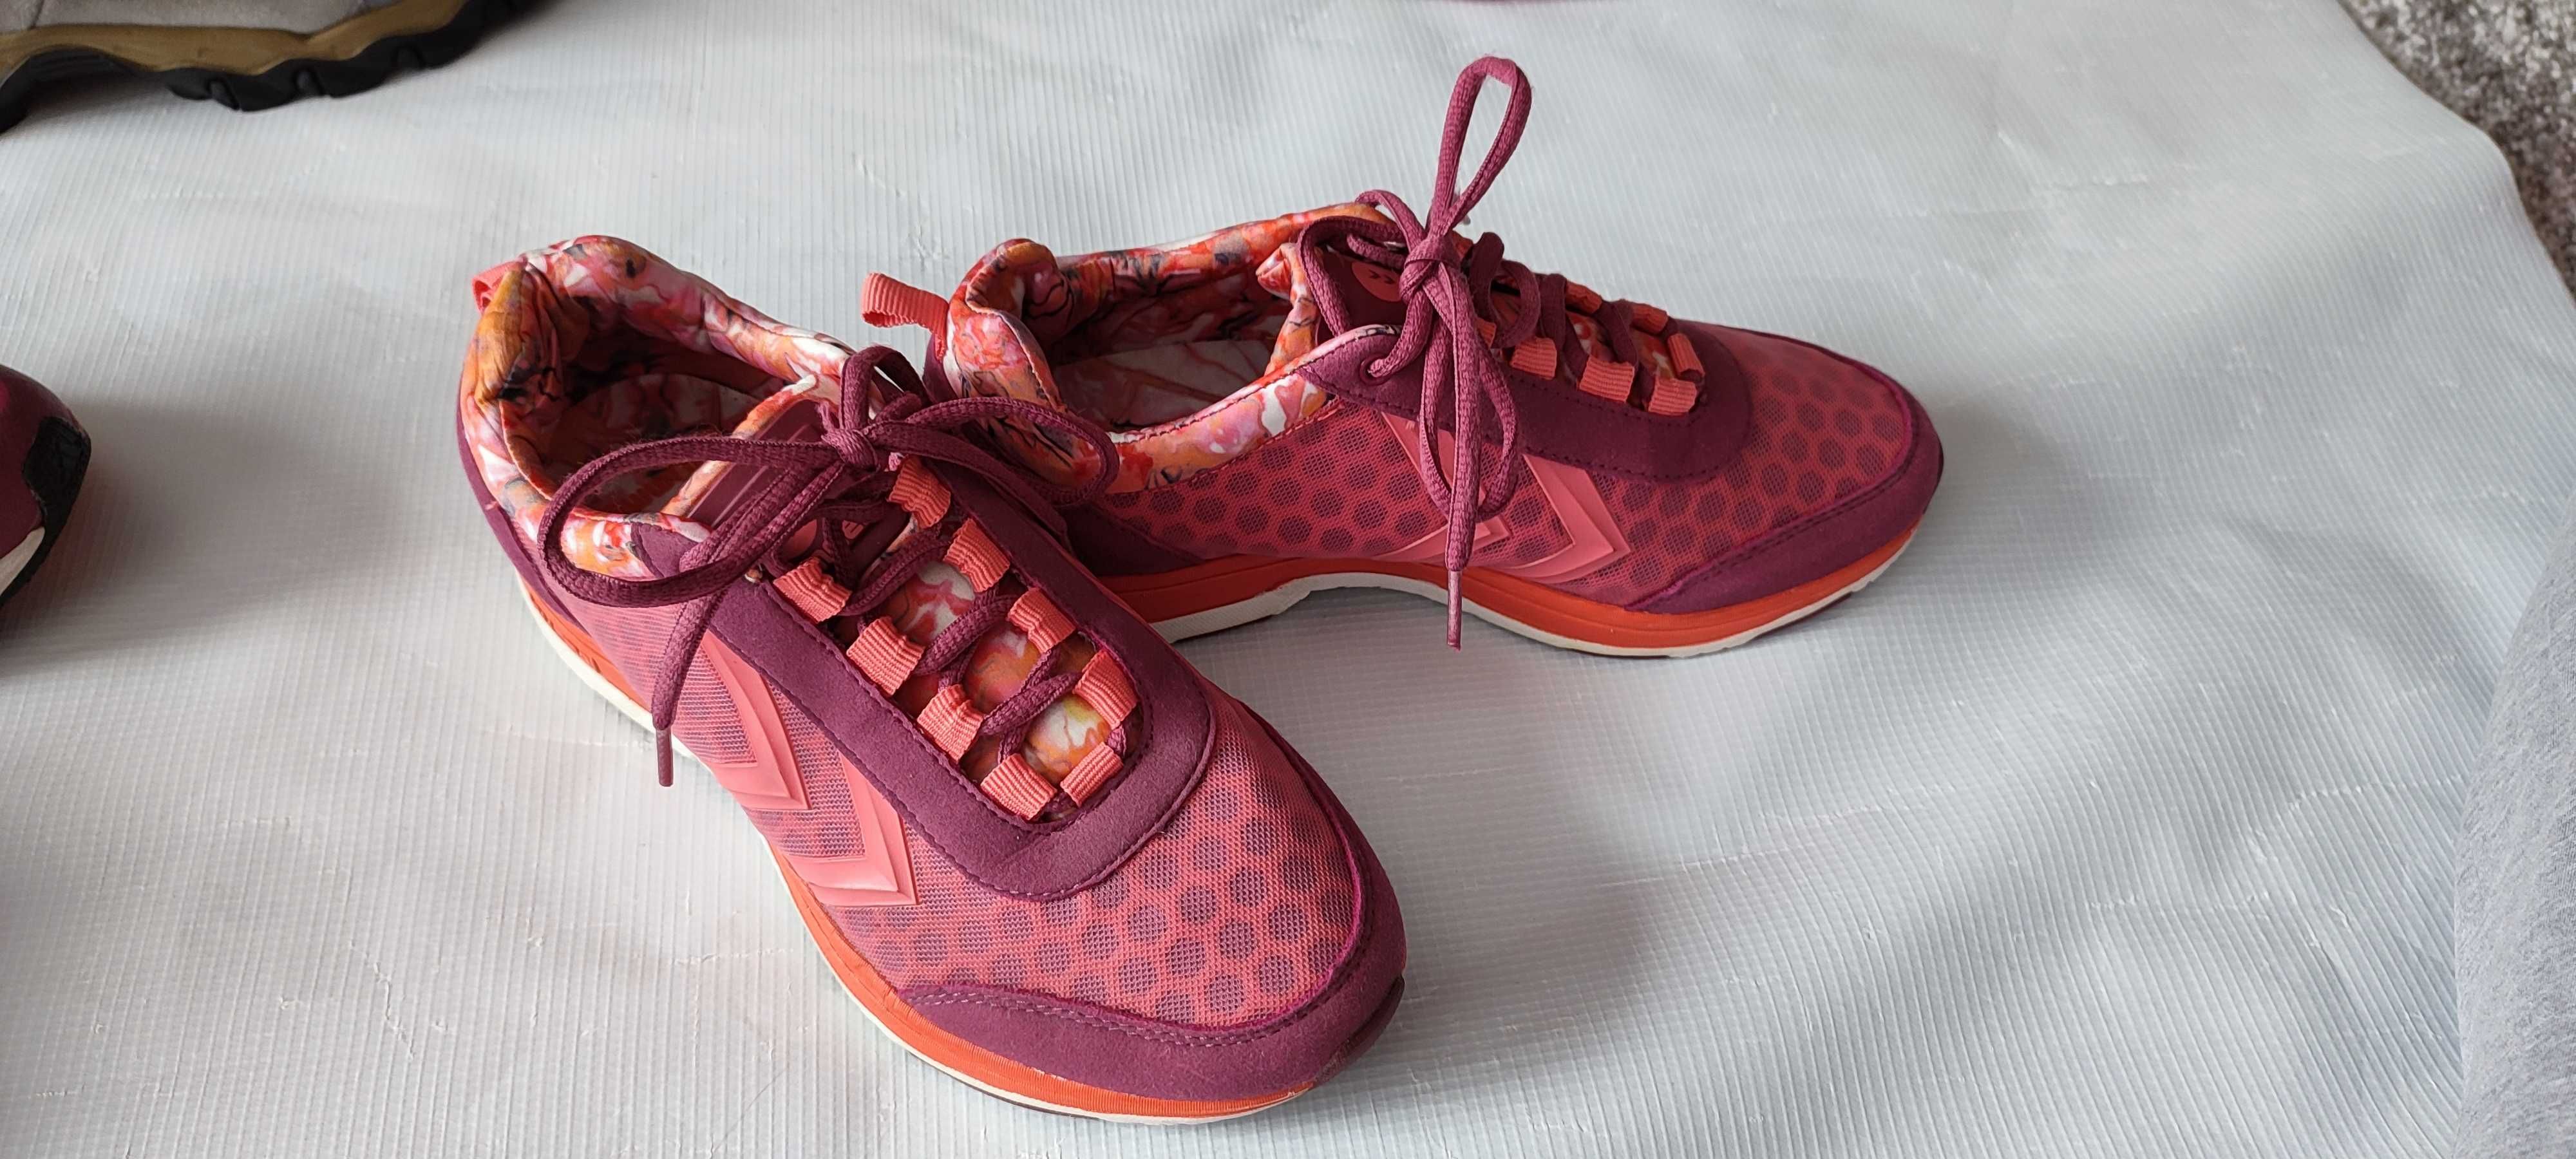 Дамски маратонки Adidas, обувки Camper ,ecco,salomon 37,38,39